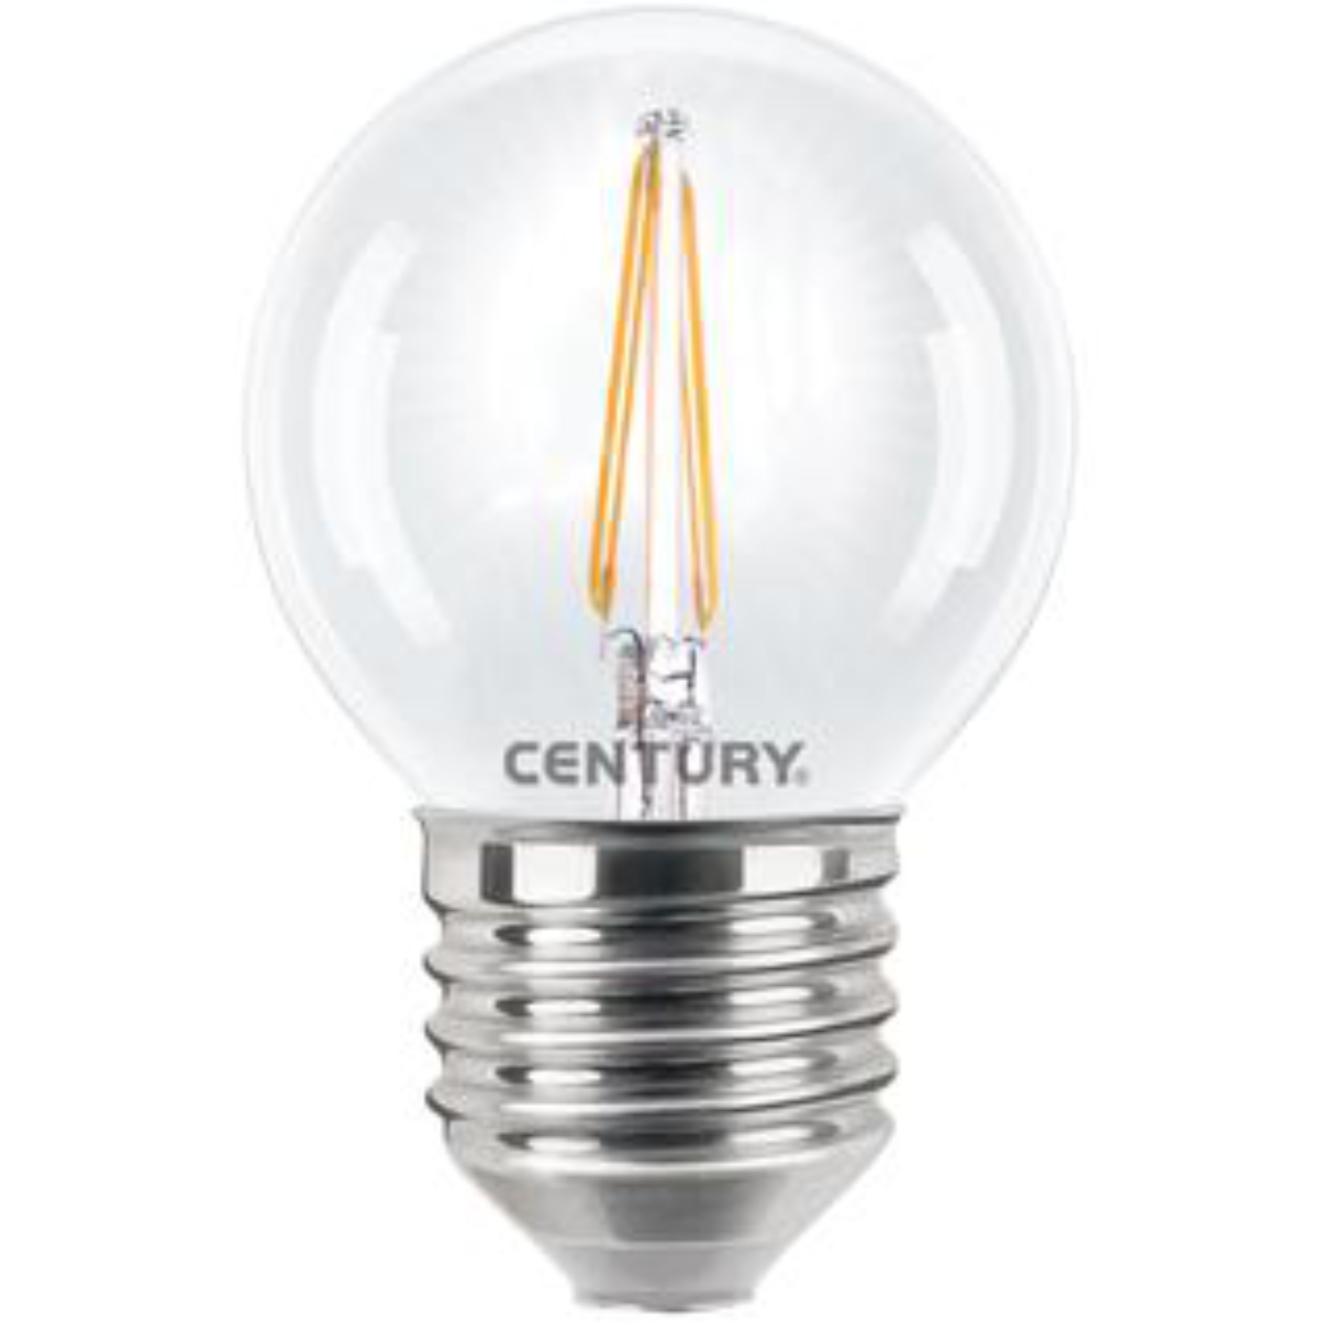 Filament LED-lamp - 395 lumen - Century